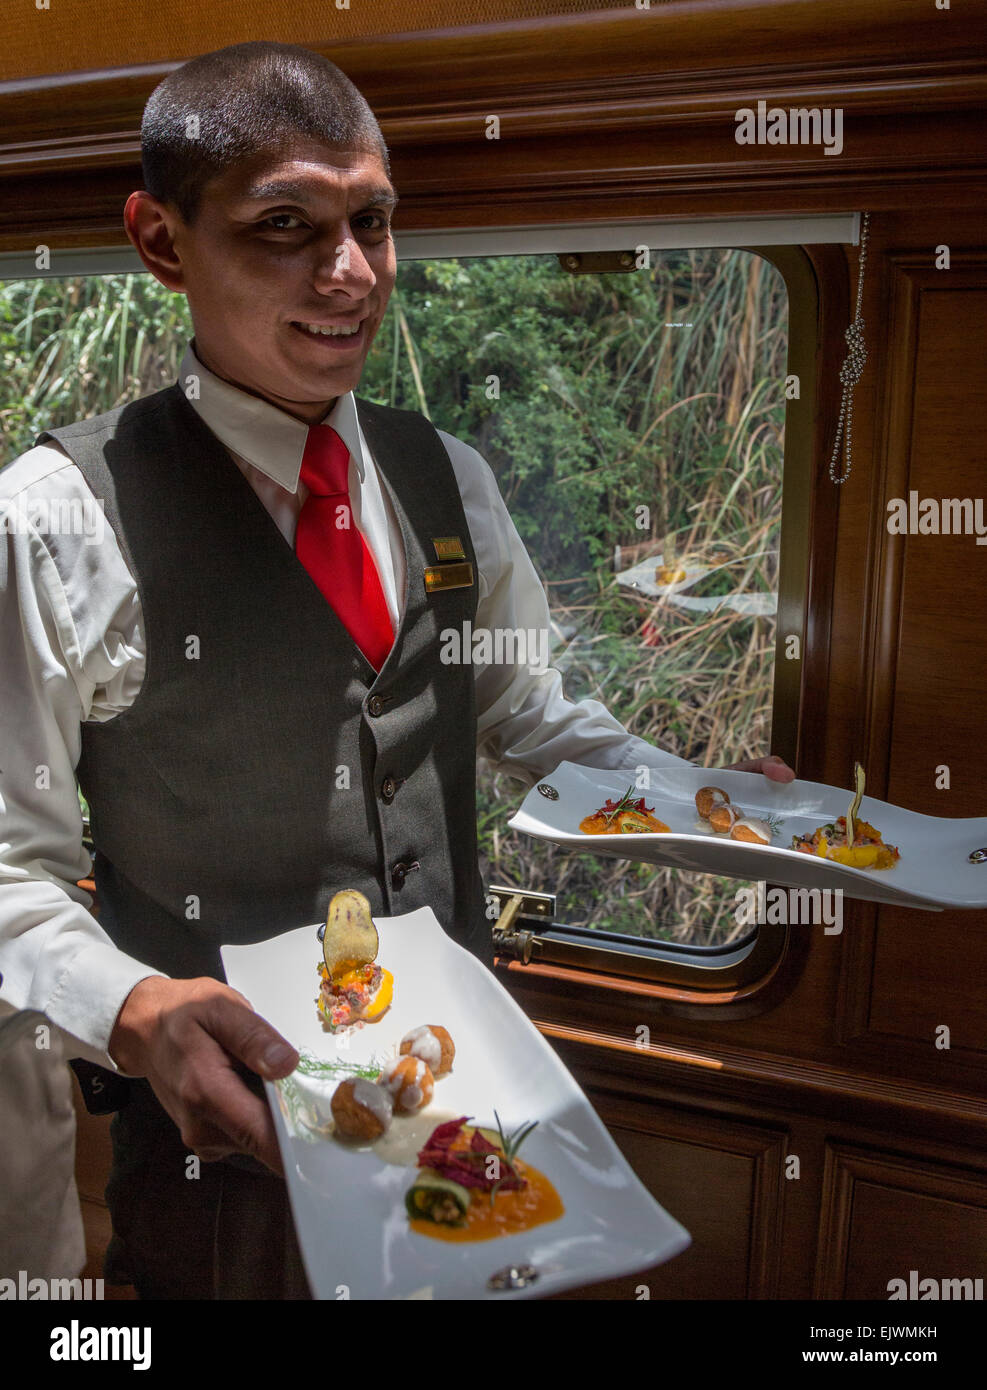 Perú, Machu Picchu. Sirviendo el almuerzo en el tren Clase Ejecutiva ferroviario inca de Ollantaytambo a Machu Picchu. Foto de stock